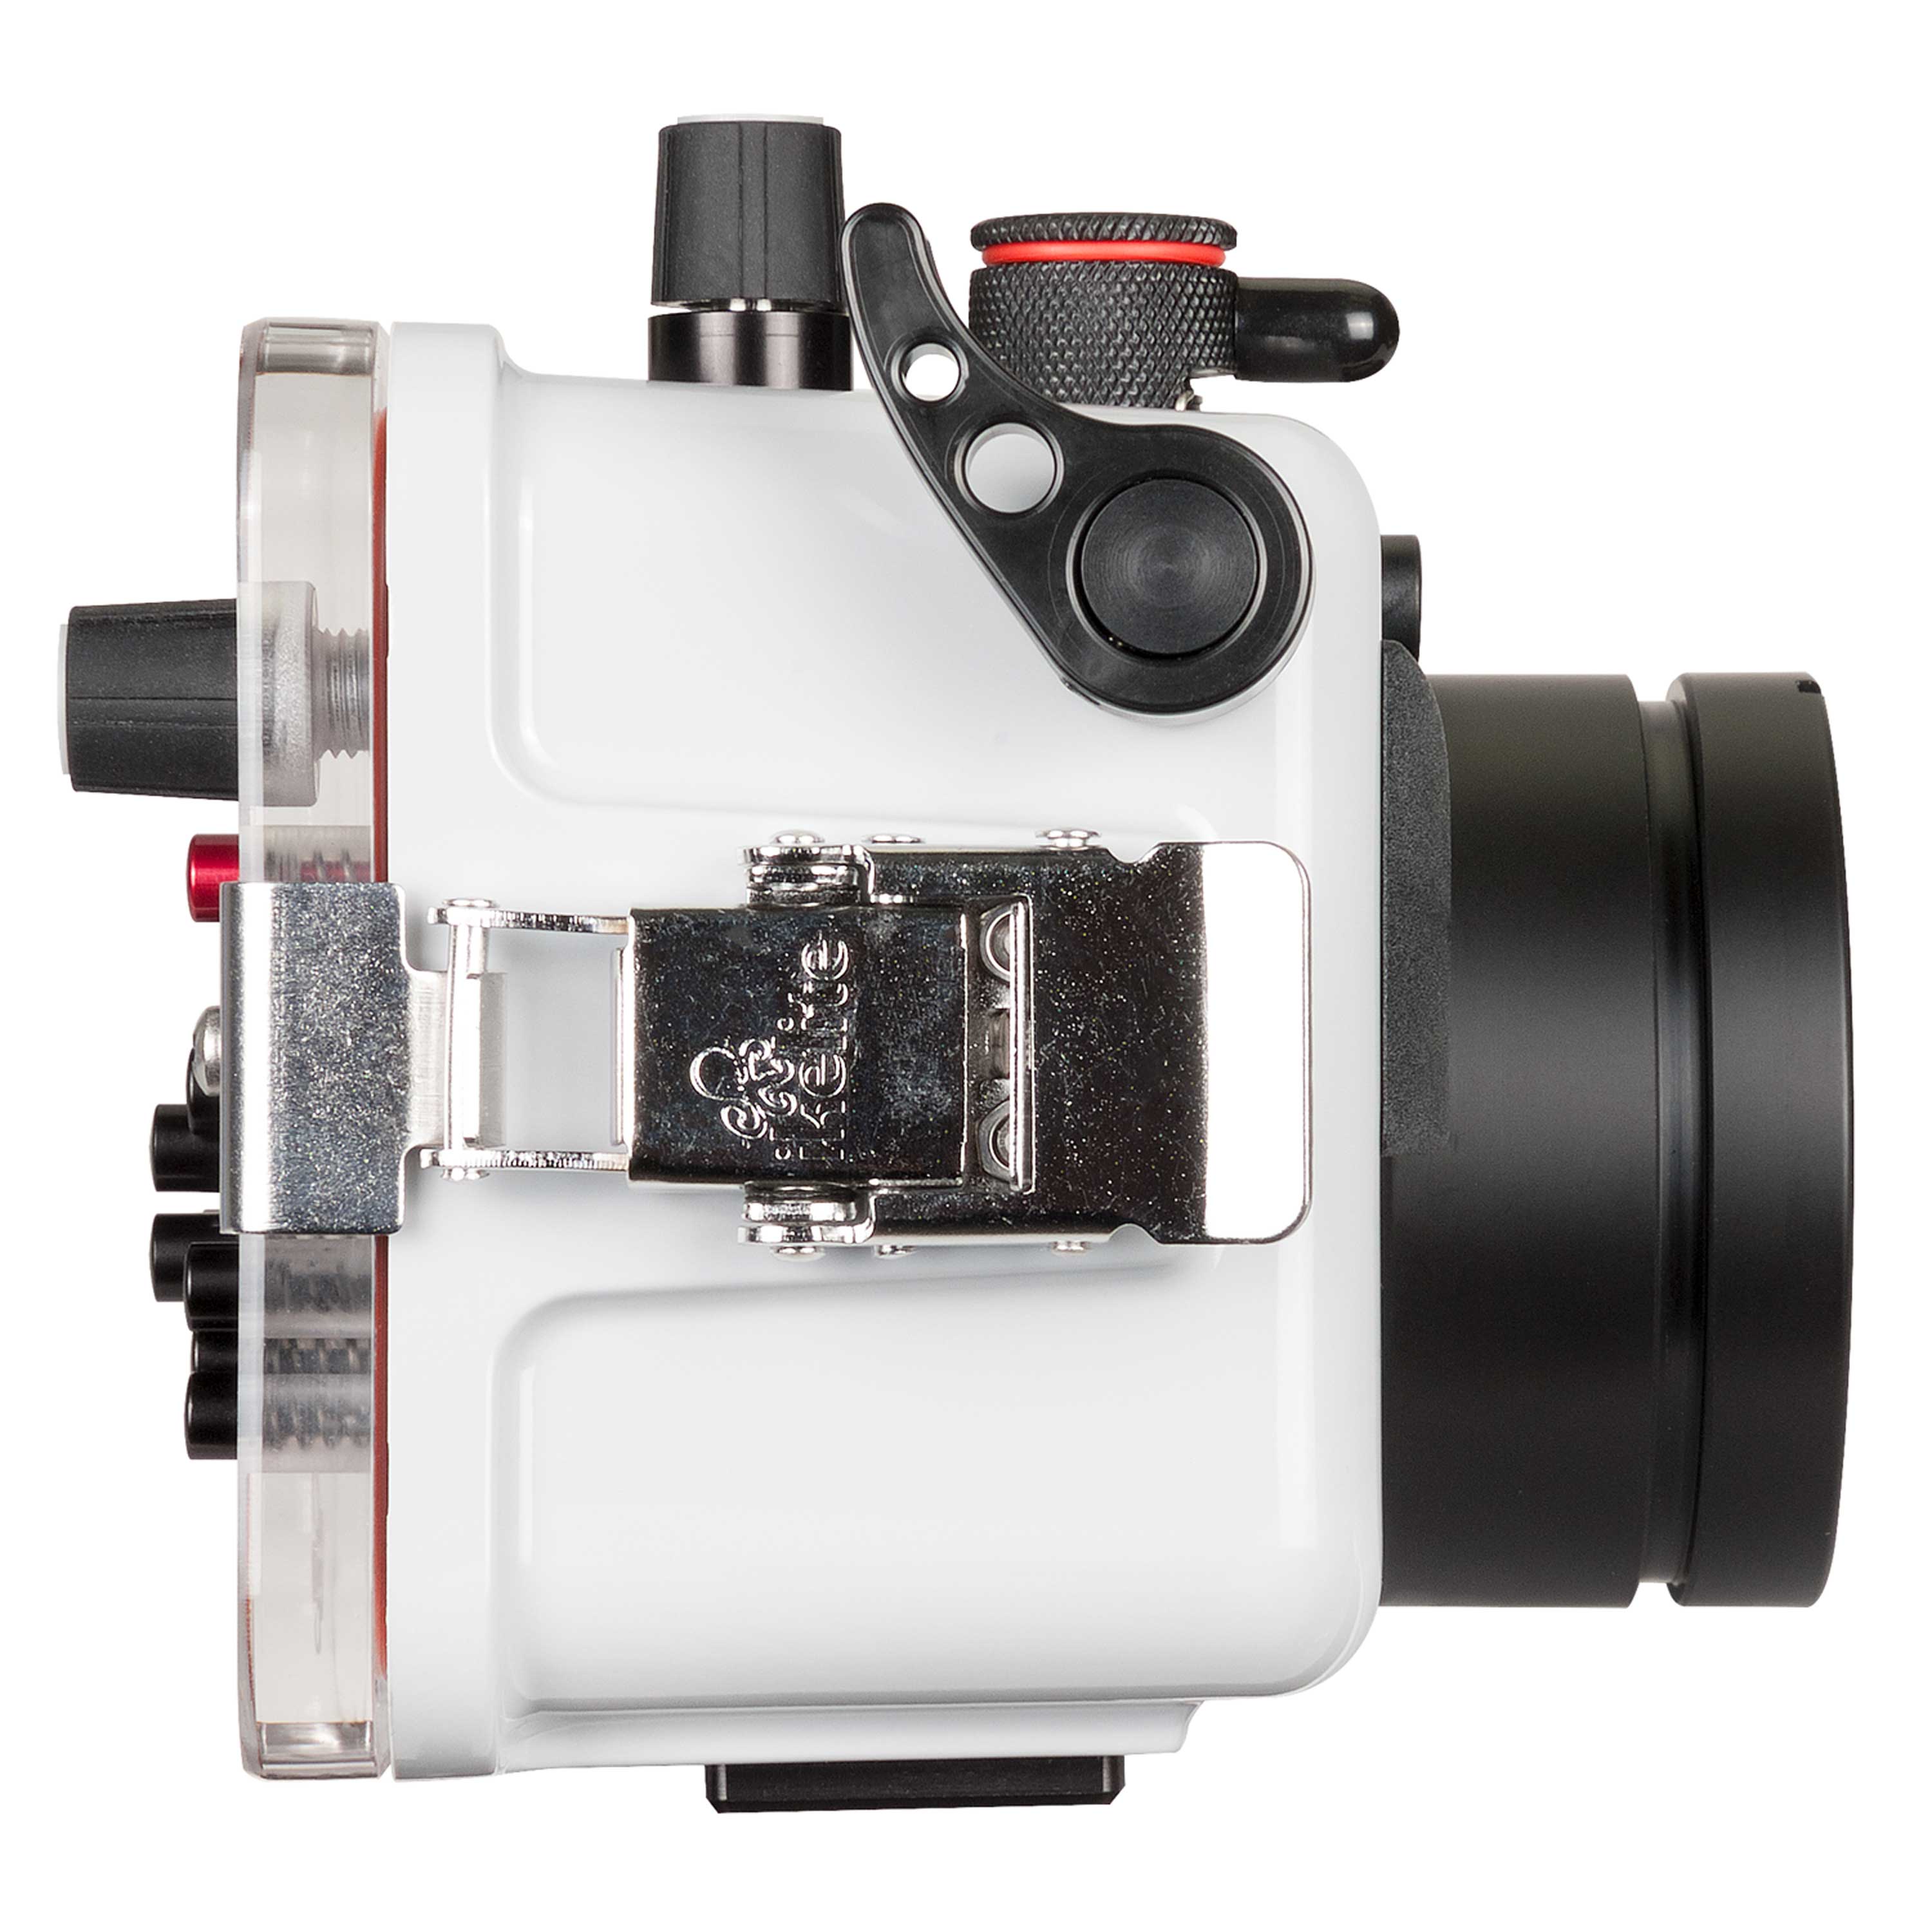 Underwater Housing and Sony RX100 Mark V Camera Kit